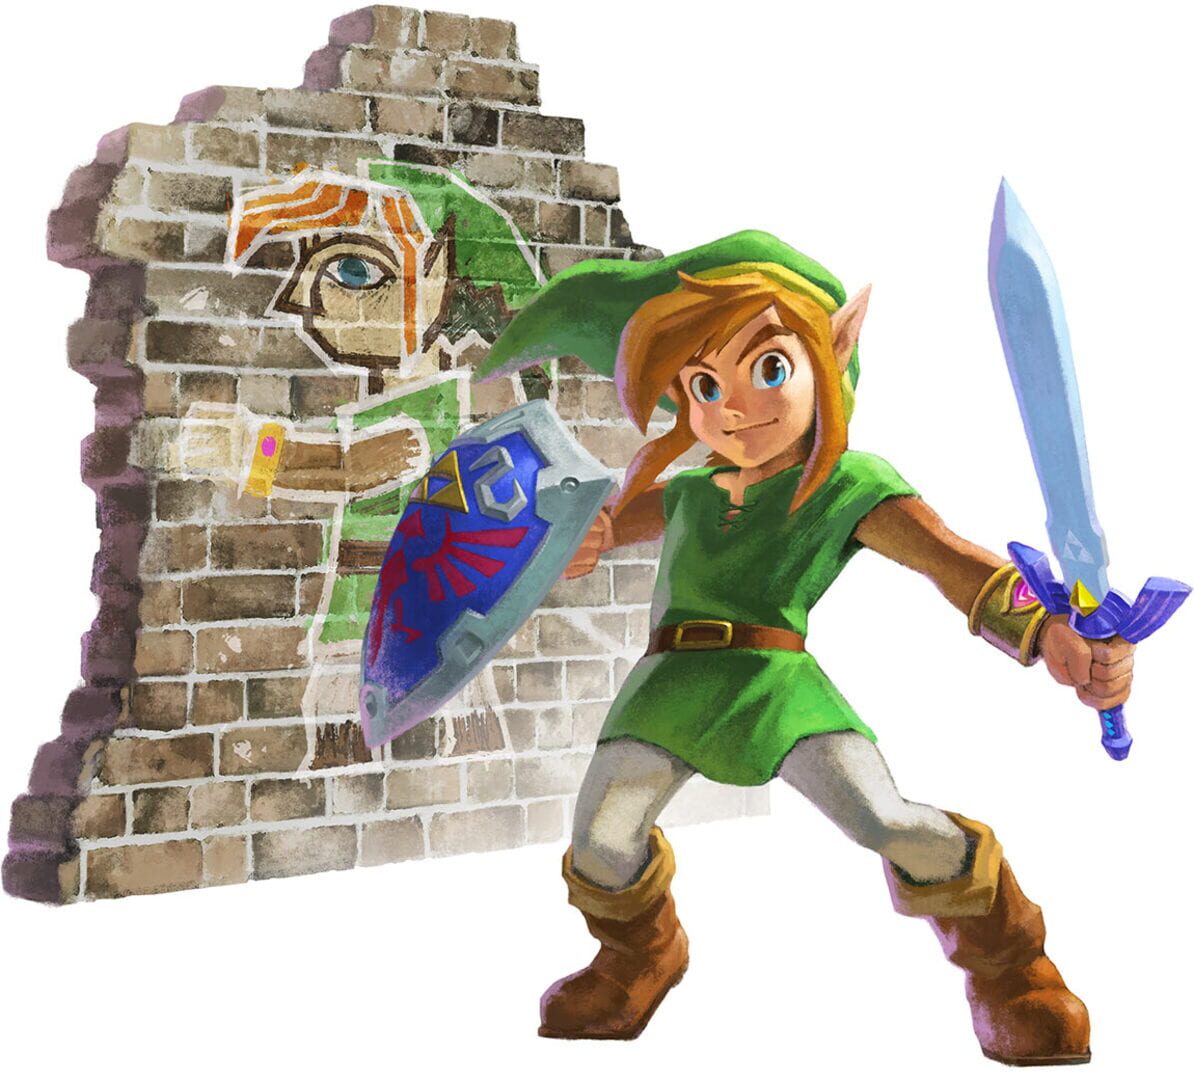 Arte - The Legend of Zelda: A Link Between Worlds